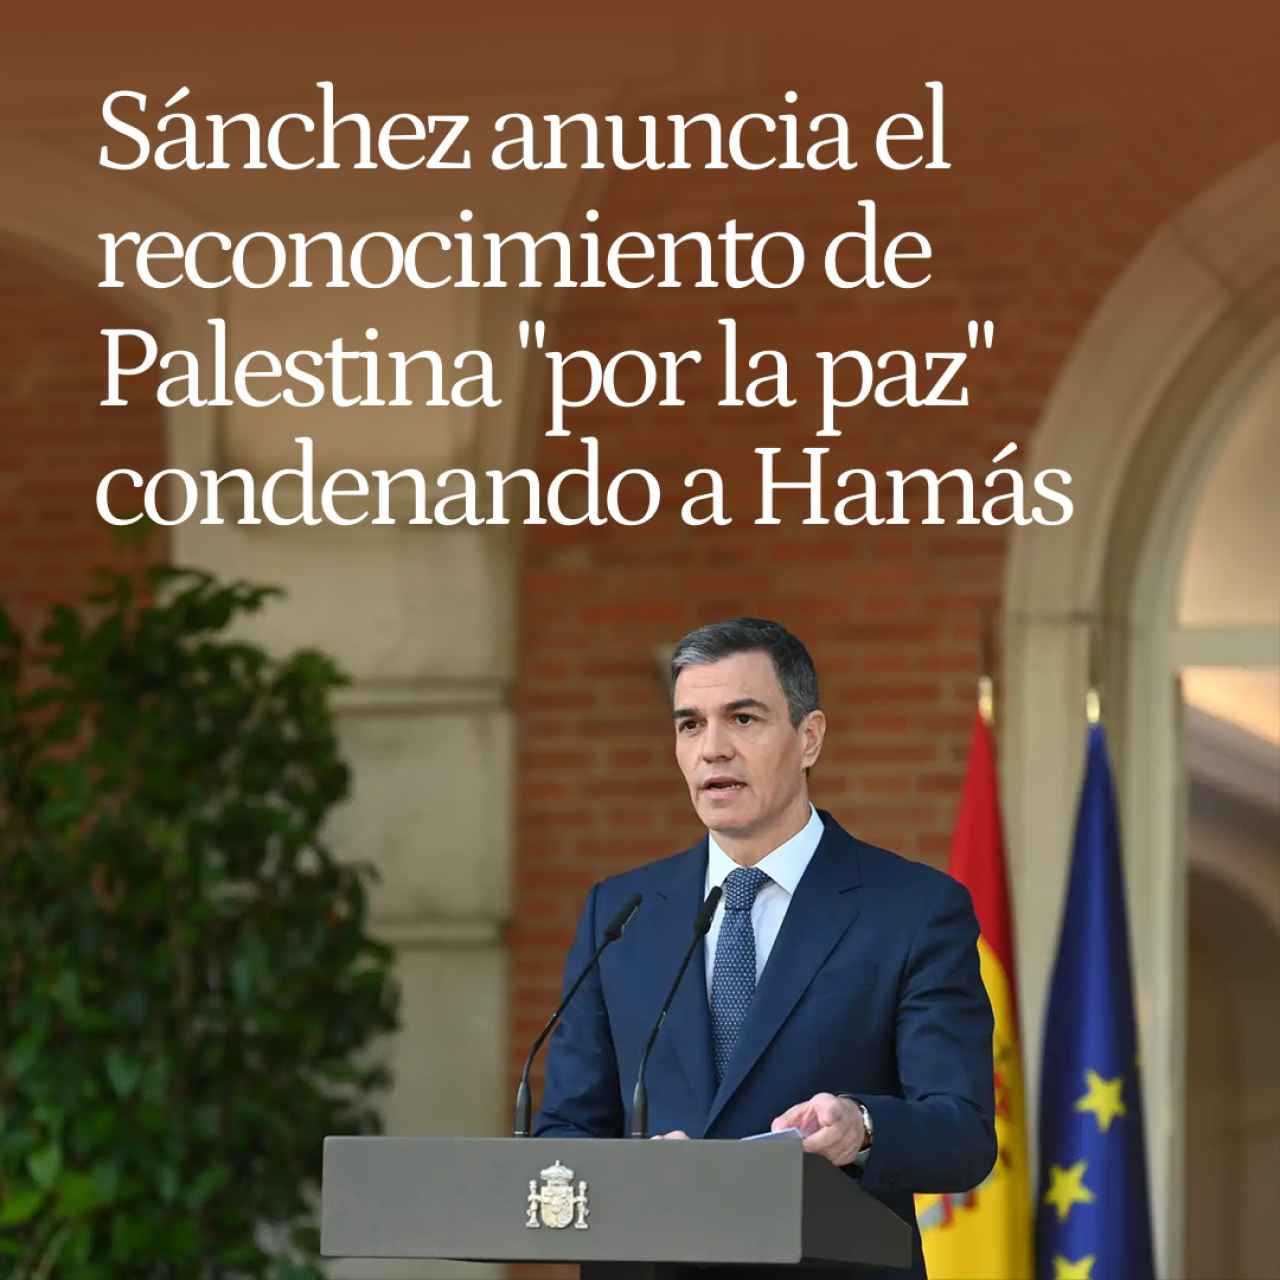 Pedro Sánchez anuncia el reconocimiento "histórico" de Palestina "por la paz" condenando a Hamás